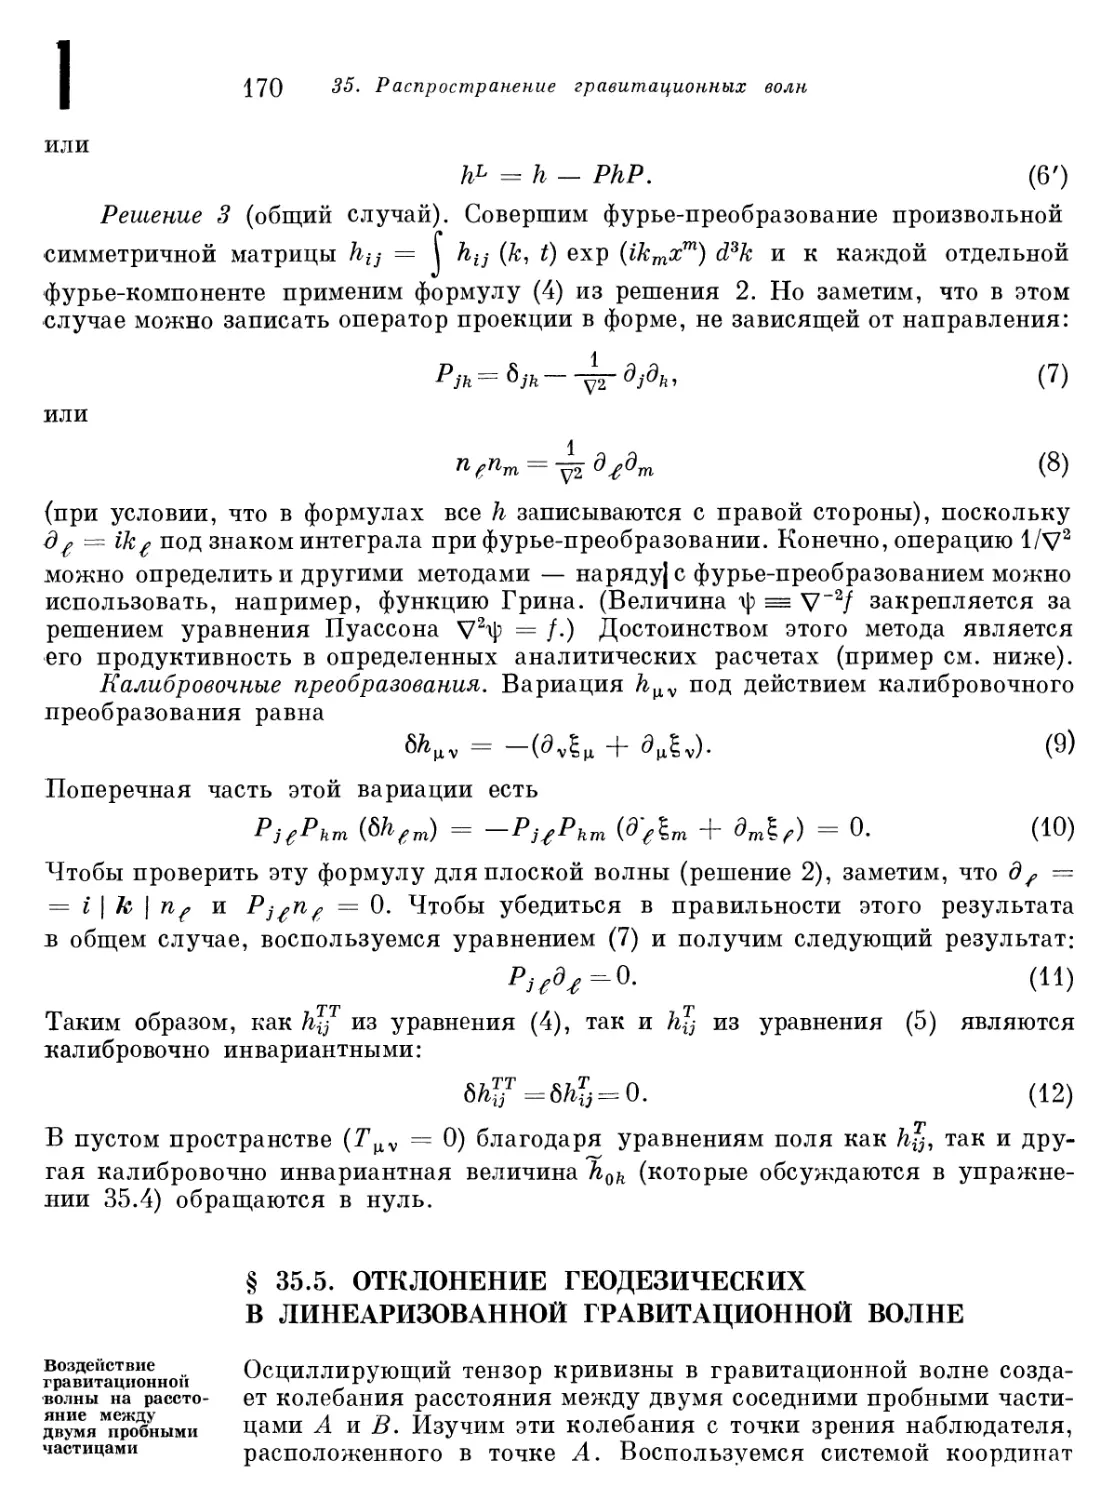 § 35.5. Отклонение геодезических в линеаризованной гравитационной волне